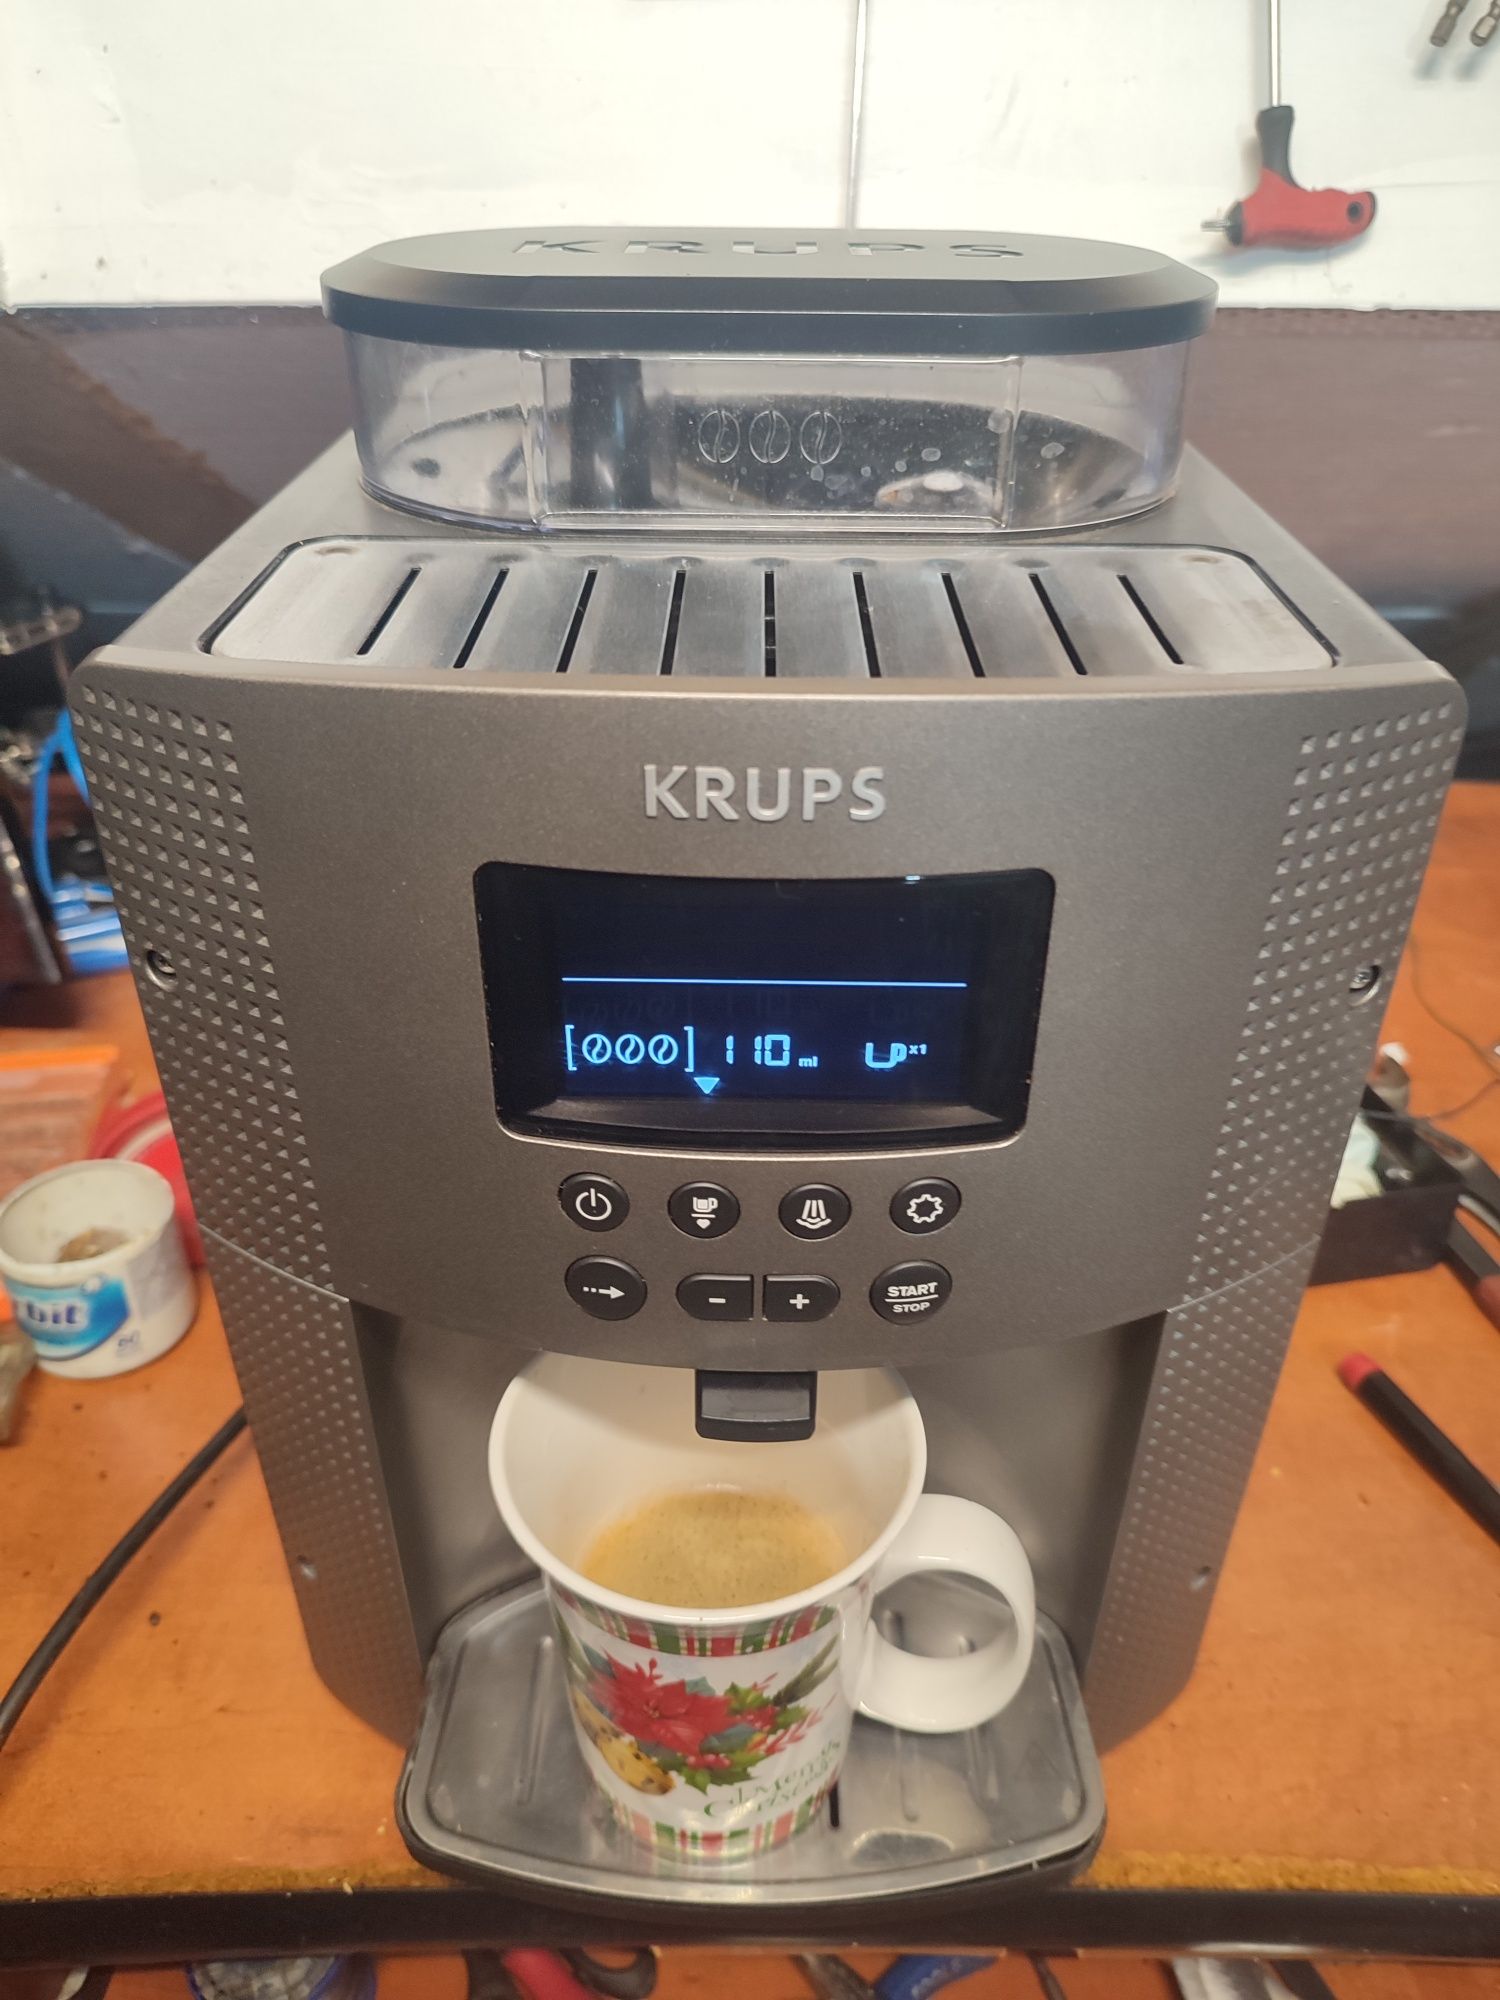 Expresor Krups cu display.